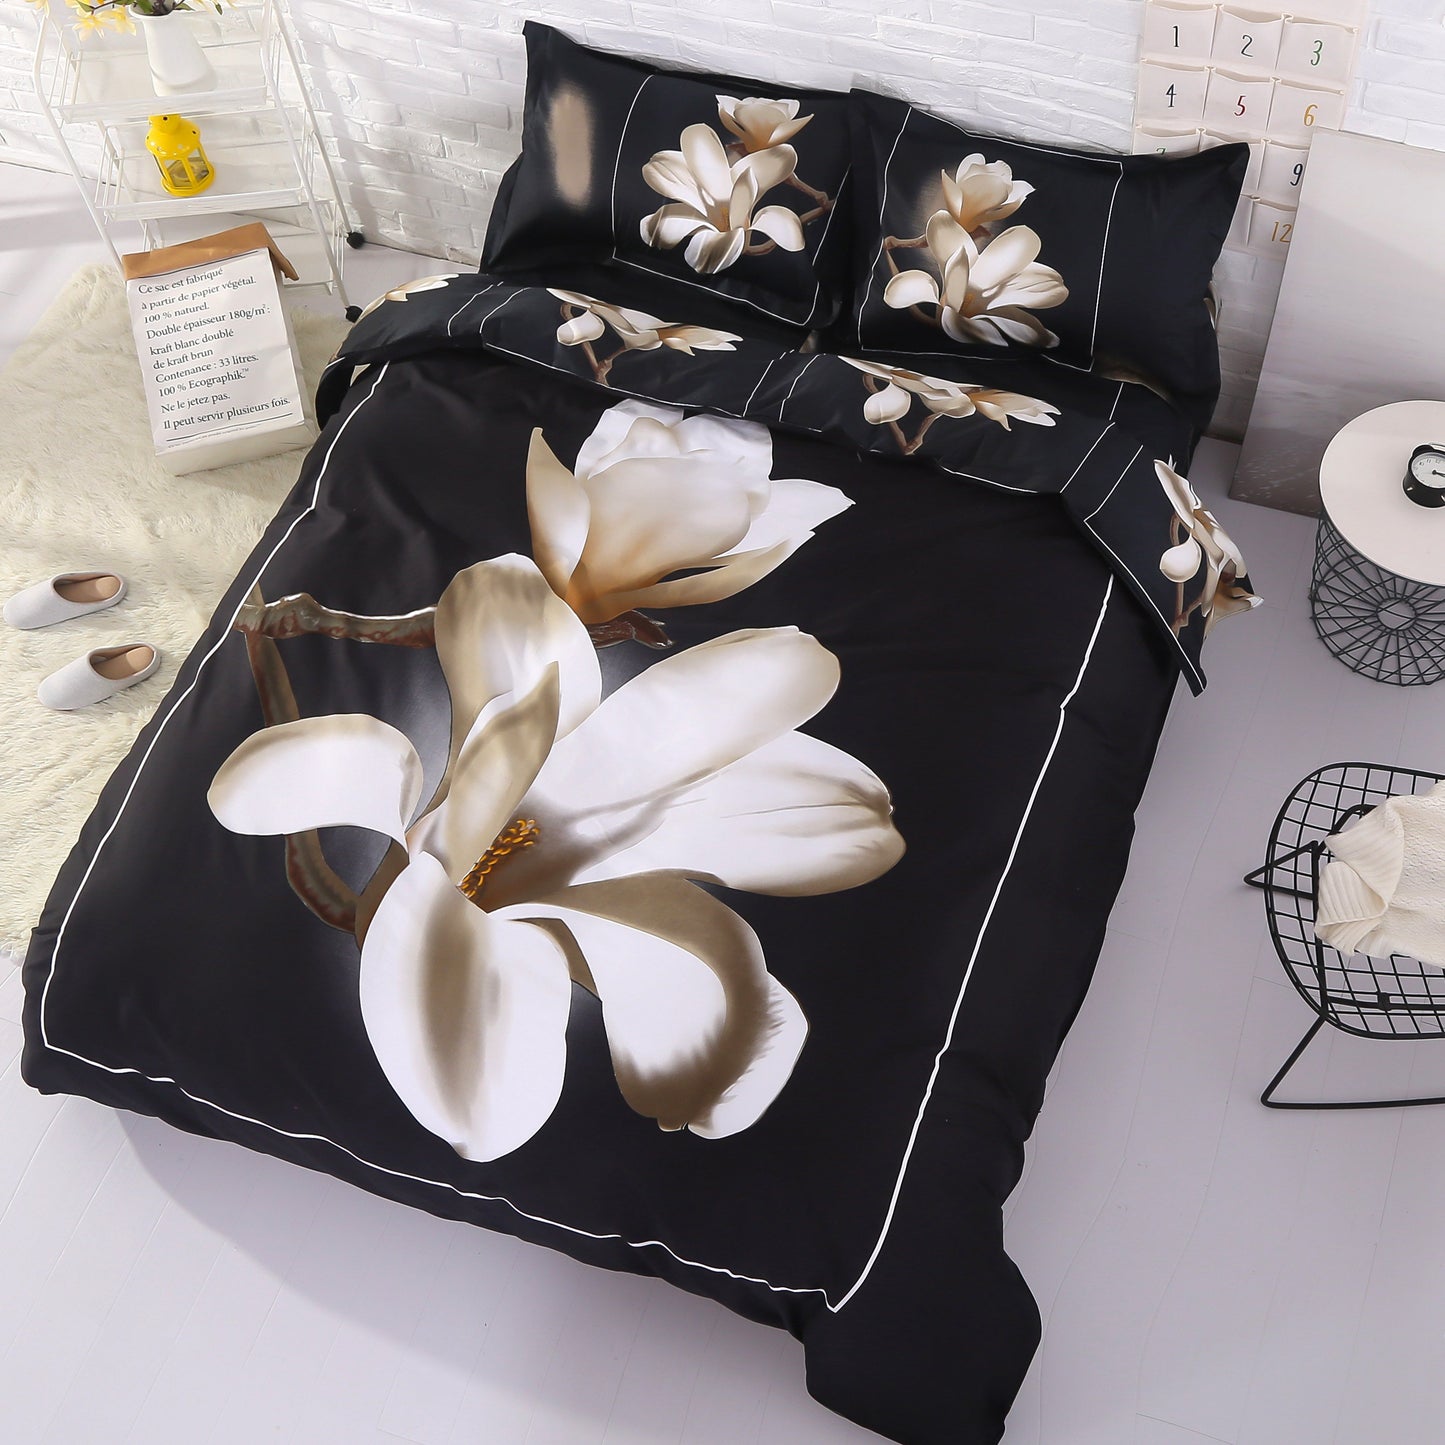 Solo EE. UU. Juego de cama/funda nórdica de 4 piezas con estampado de magnolia blanca en 3D, microfibra, negro